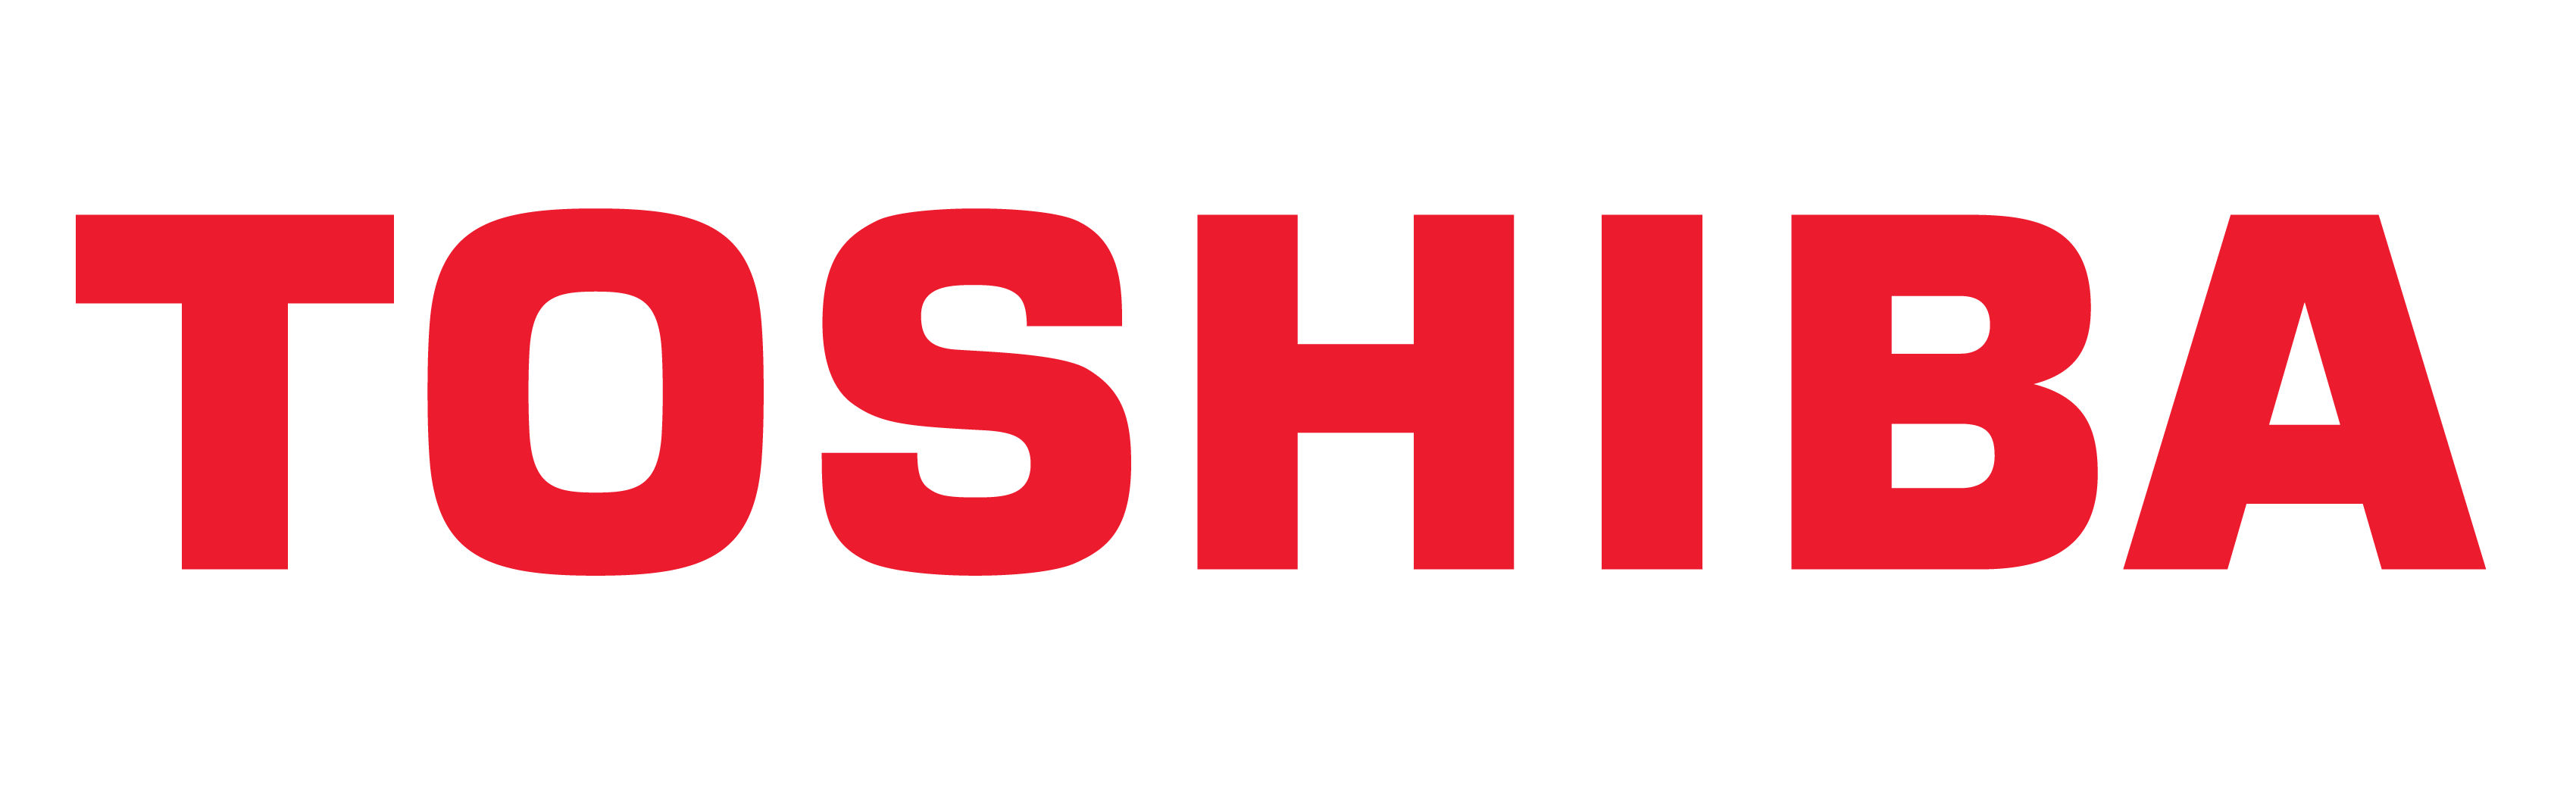 Toshiba-logo, Toshiba-symbol, mening, historie og evolusjon